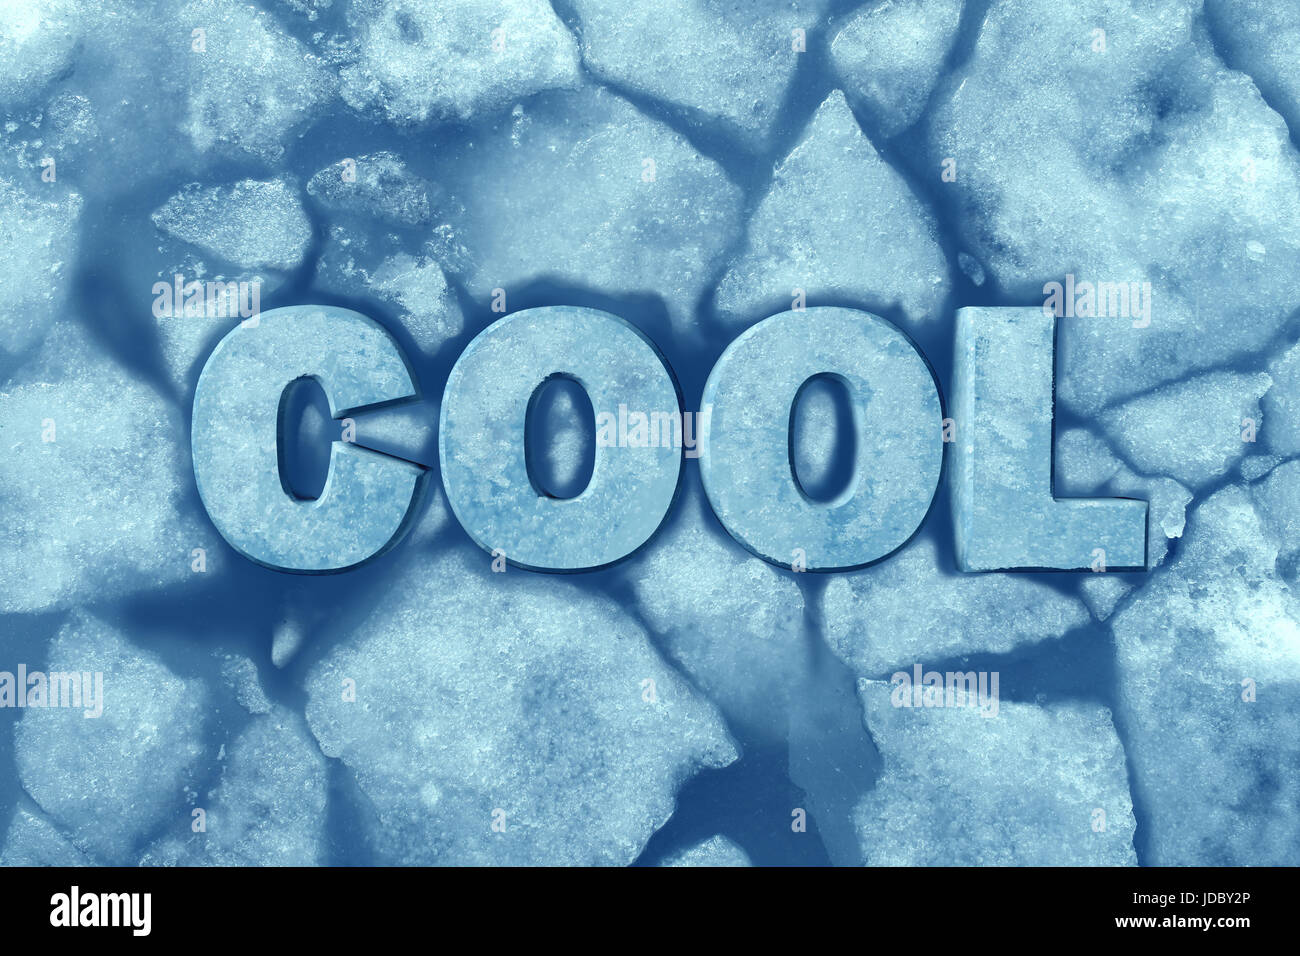 Cool como texto en el símbolo de hielo glacial helada agua congelada como un sistema de refrigeración y aire acondicionado confort símbolo con ilustración 3D elementos. Foto de stock